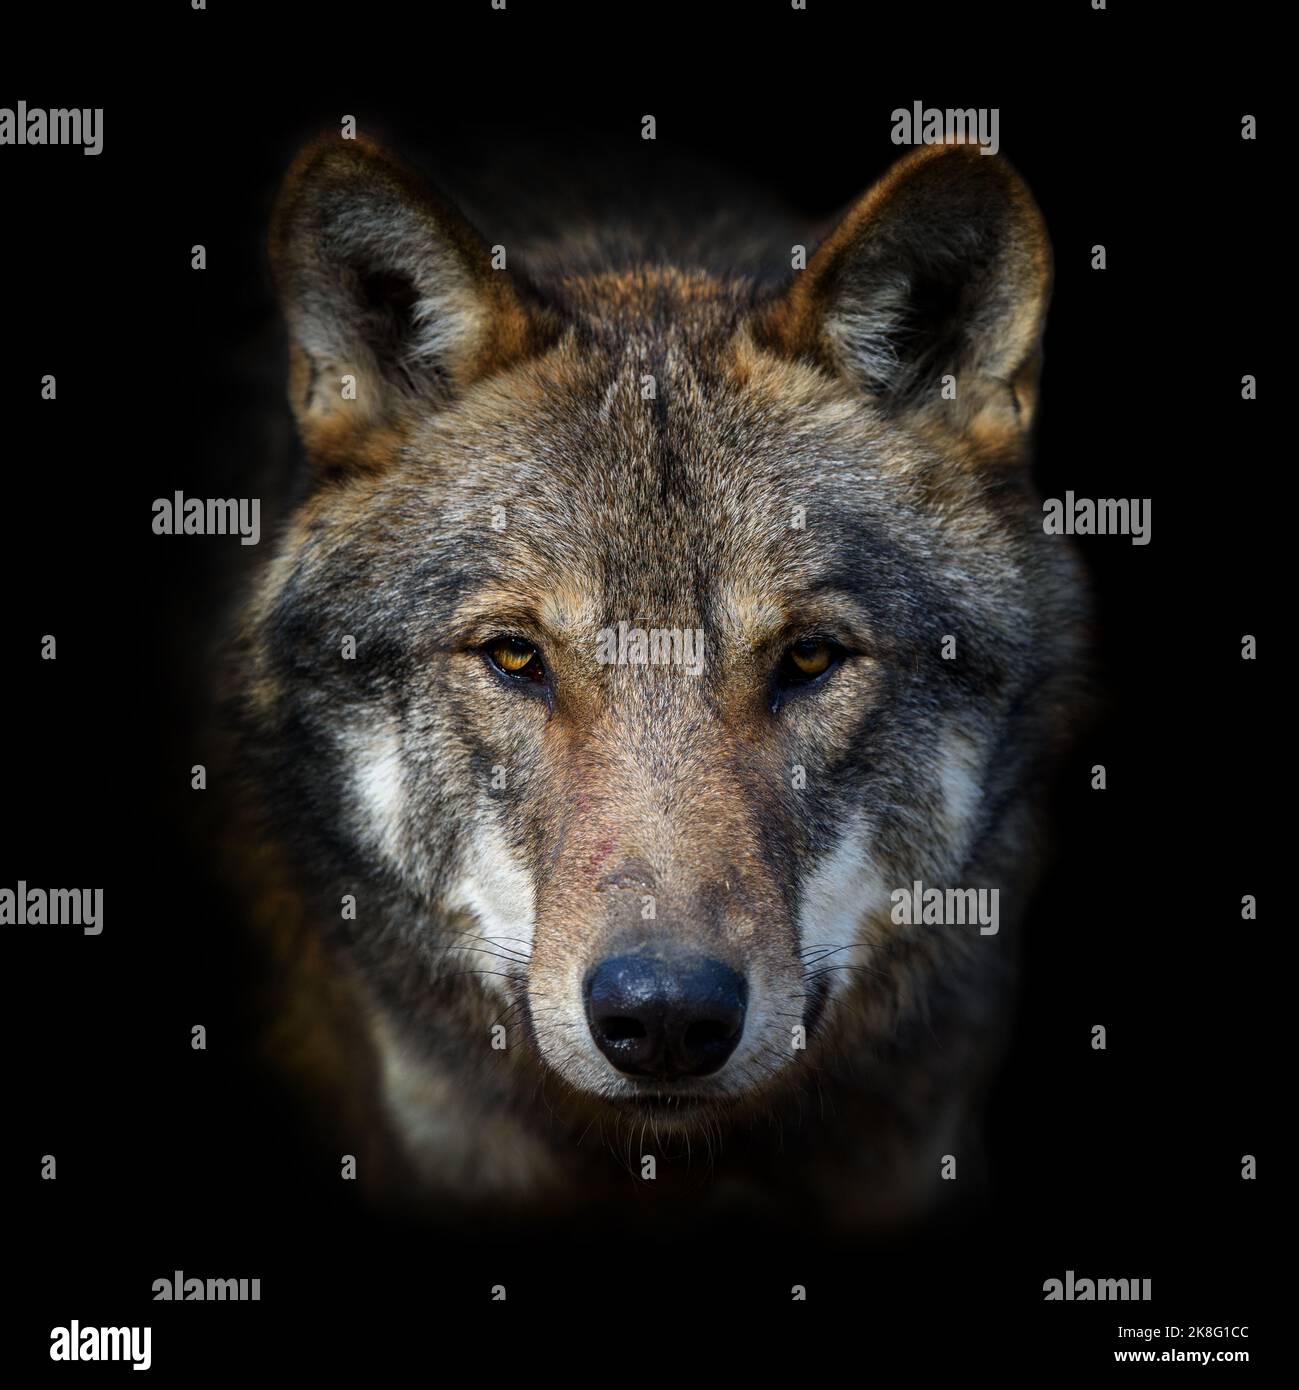 Ritratto di lupo su sfondo scuro. Fauna selvatica scena dalla natura. Animale selvatico nell'habitat naturale Foto Stock